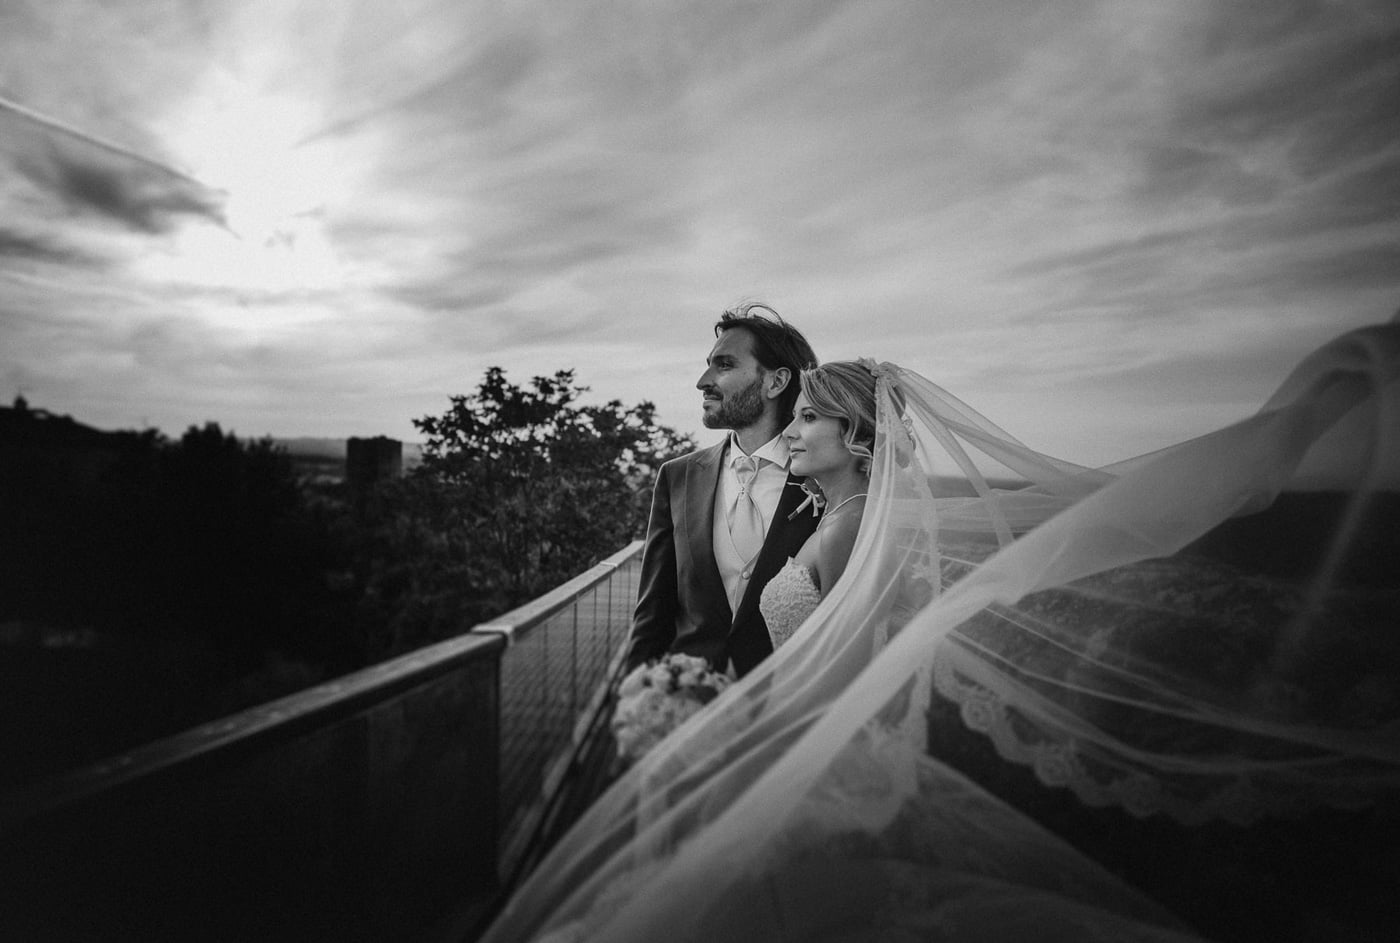 Andrea & Francesca | Wedding at Borgo San Luigi by Federico Pannacci 56